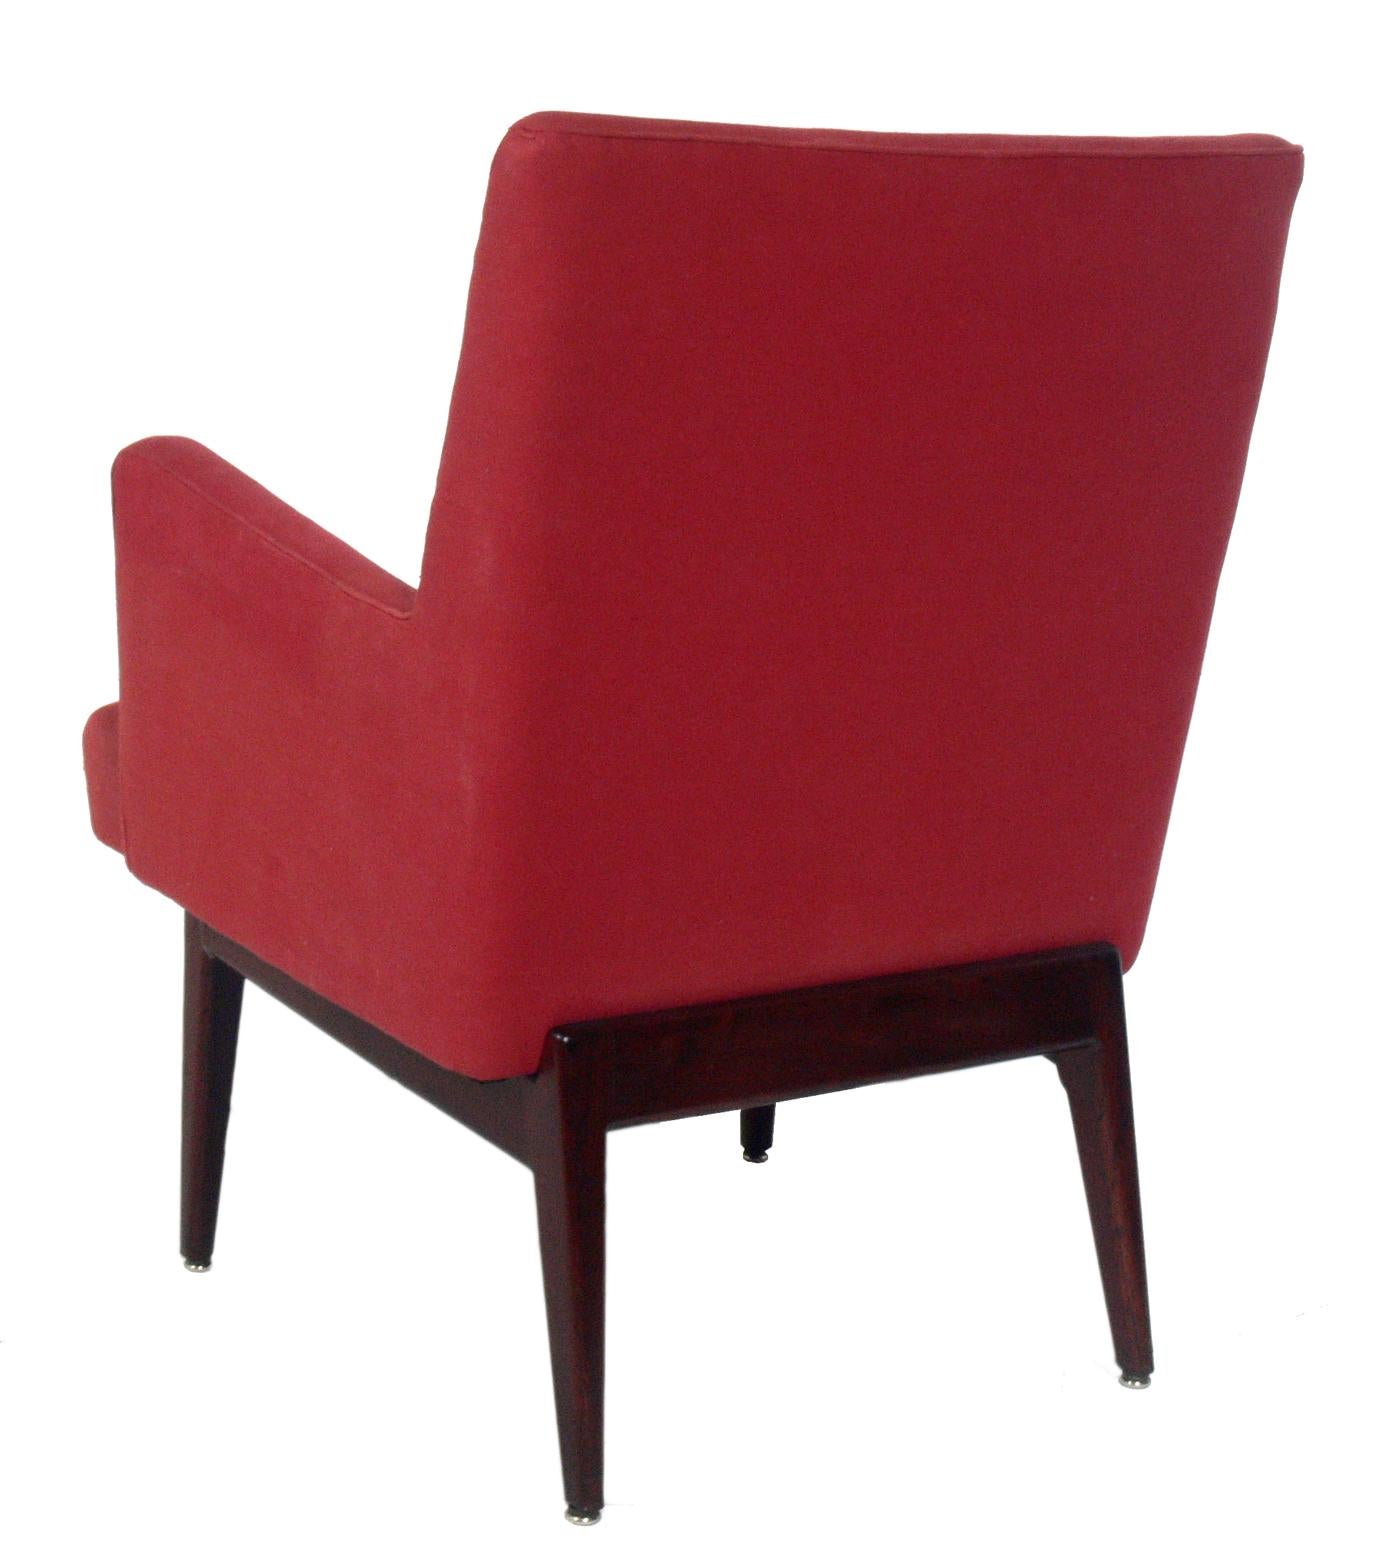 Sauber gepolsterte Sessel, entworfen von Jens Risom, Amerikaner, um 1960. Die Entwürfe von Risom sind immer eine Anspielung auf das moderne dänische Design, und diese Stühle sind keine Ausnahme. Sie haben klare Linien, kantige Arme und Sockel aus